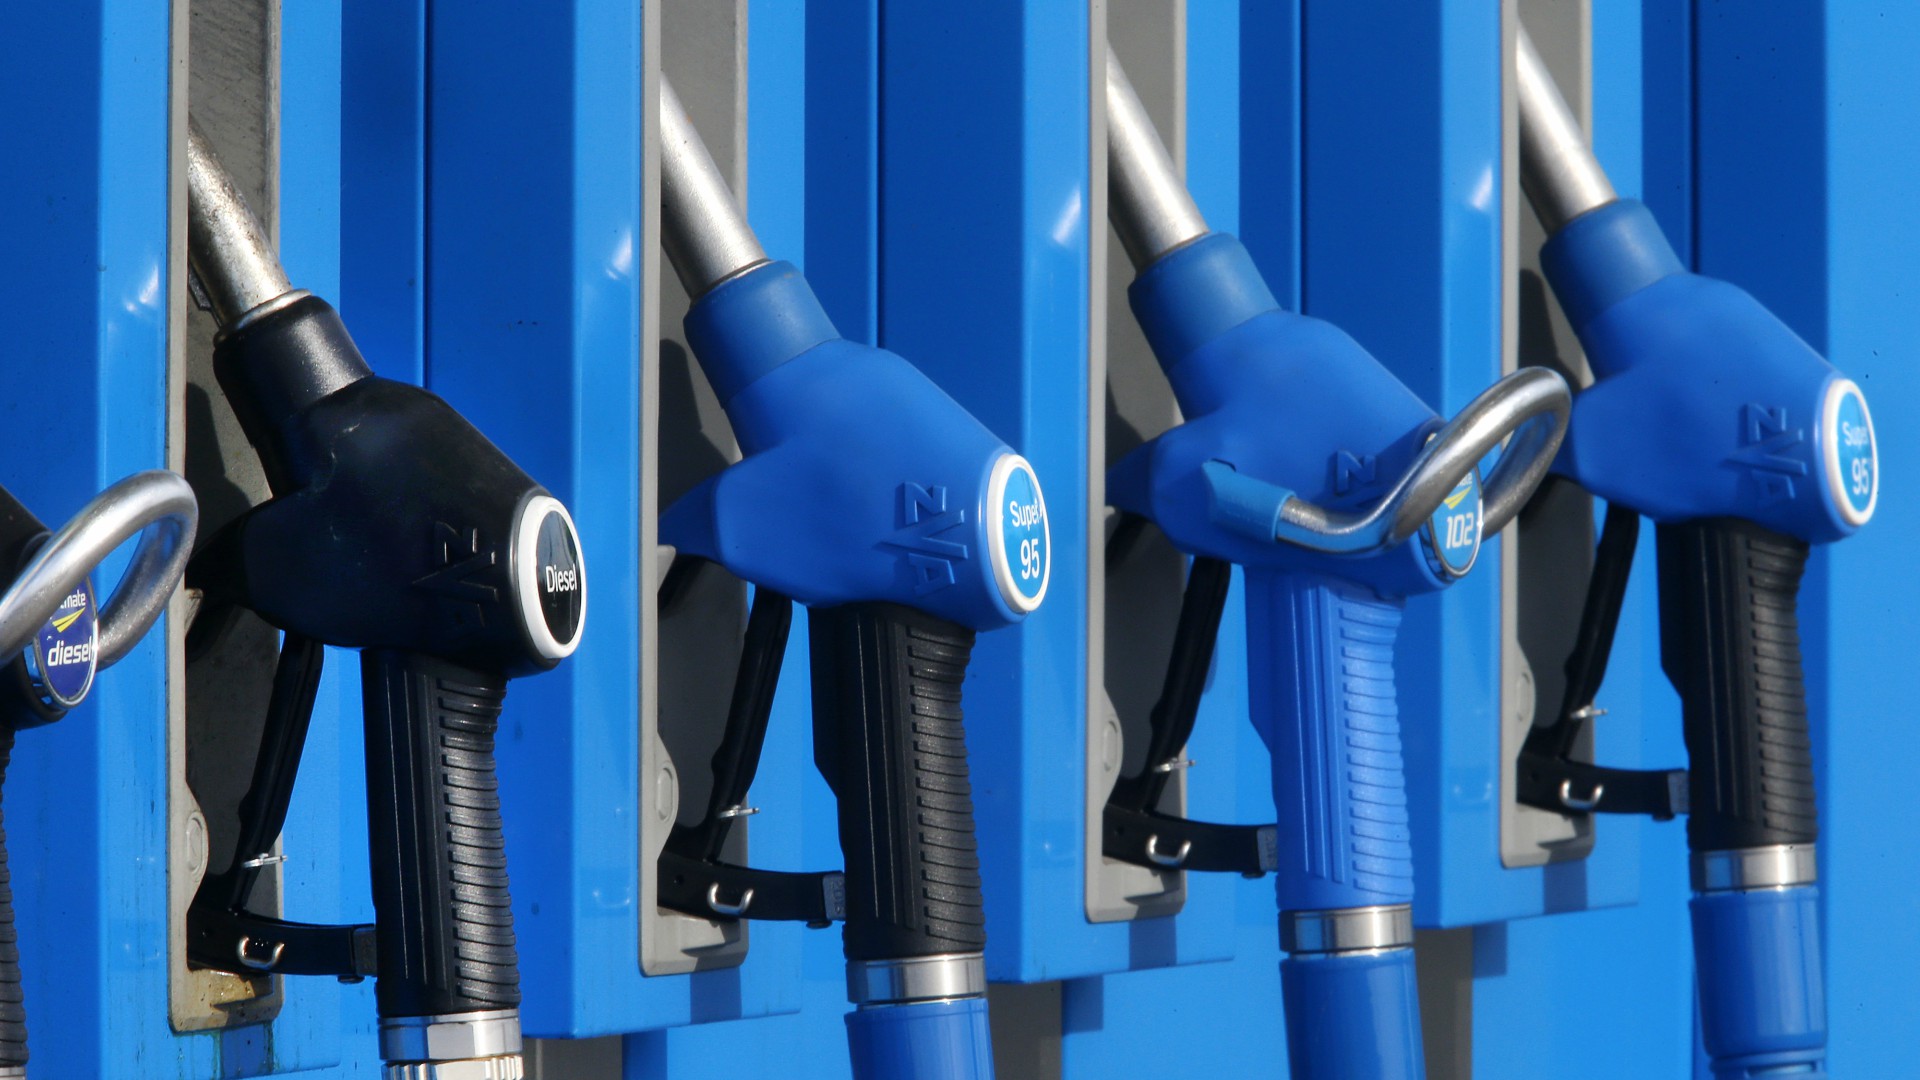 La inflación anual del IPC baja al 1,2% por la menor subida de precios de los carburantes